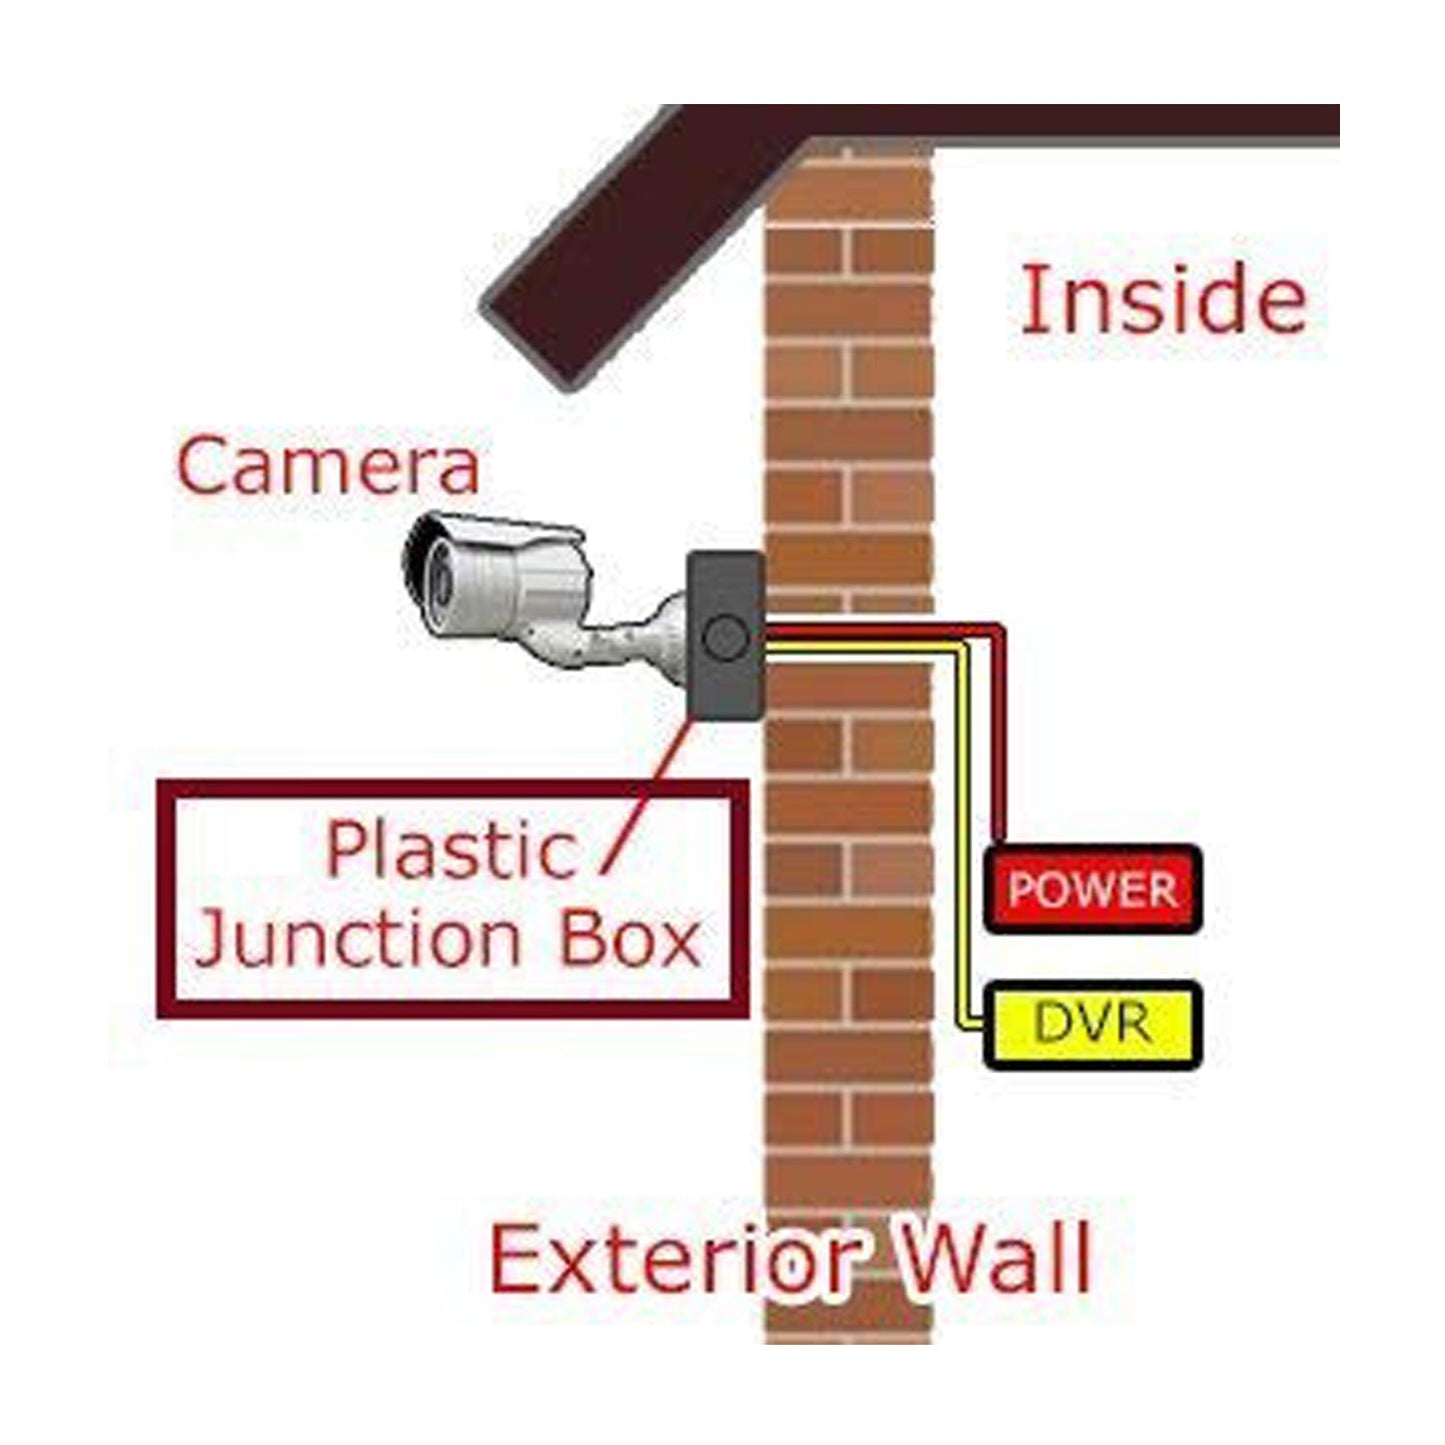 कैमरा माउंटिंग बॉक्स का उपयोग बिना किसी नुकसान के कैमरे को मजबूती से स्टोर करने के लिए किया जाता है